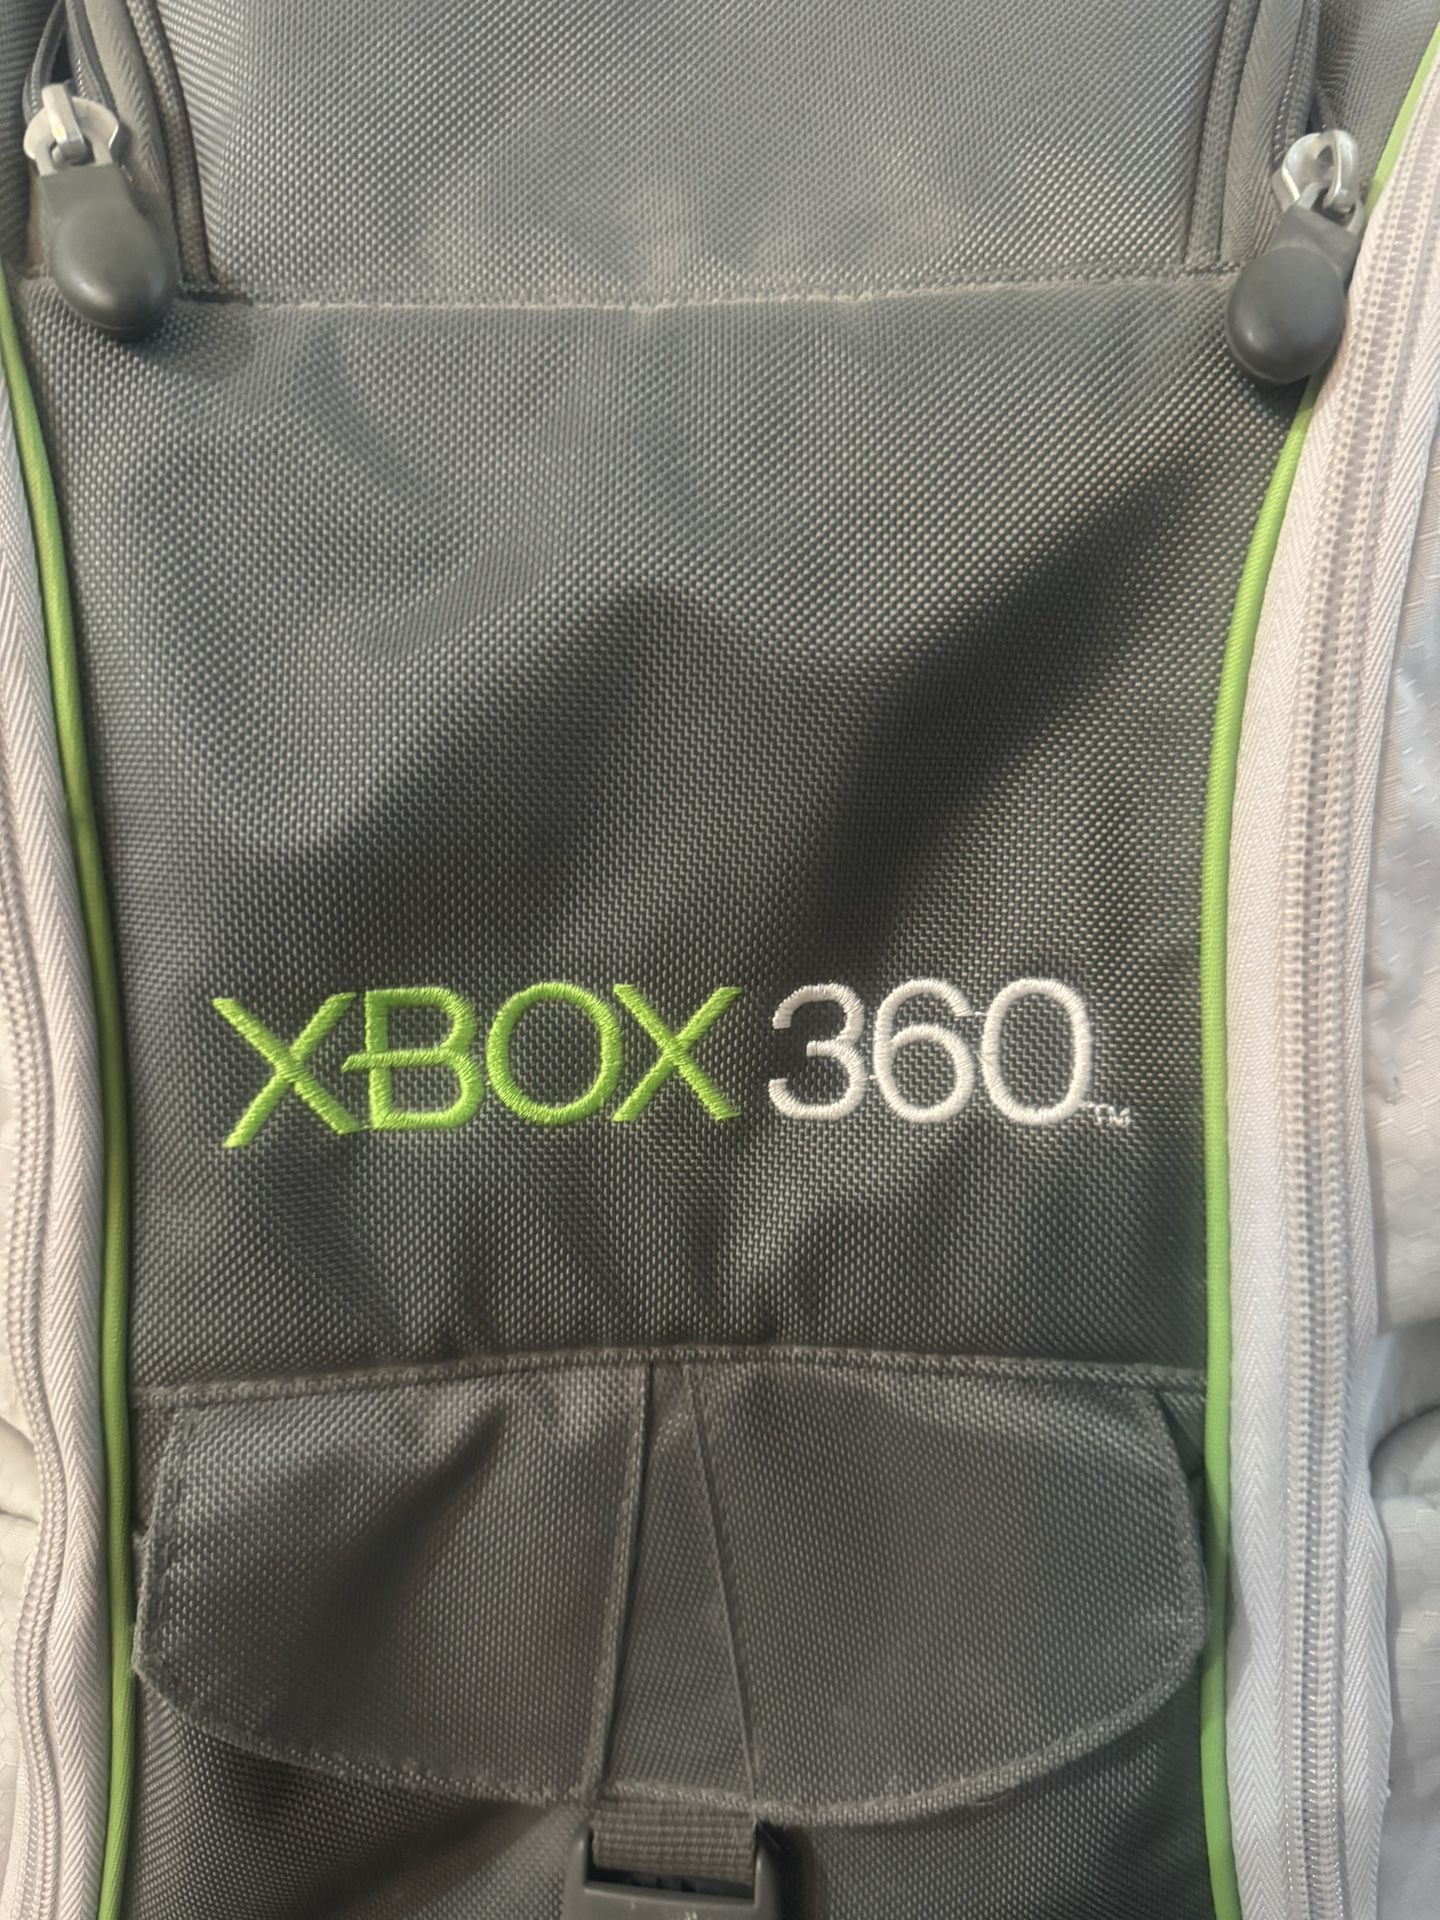 Xbox 360 backpack